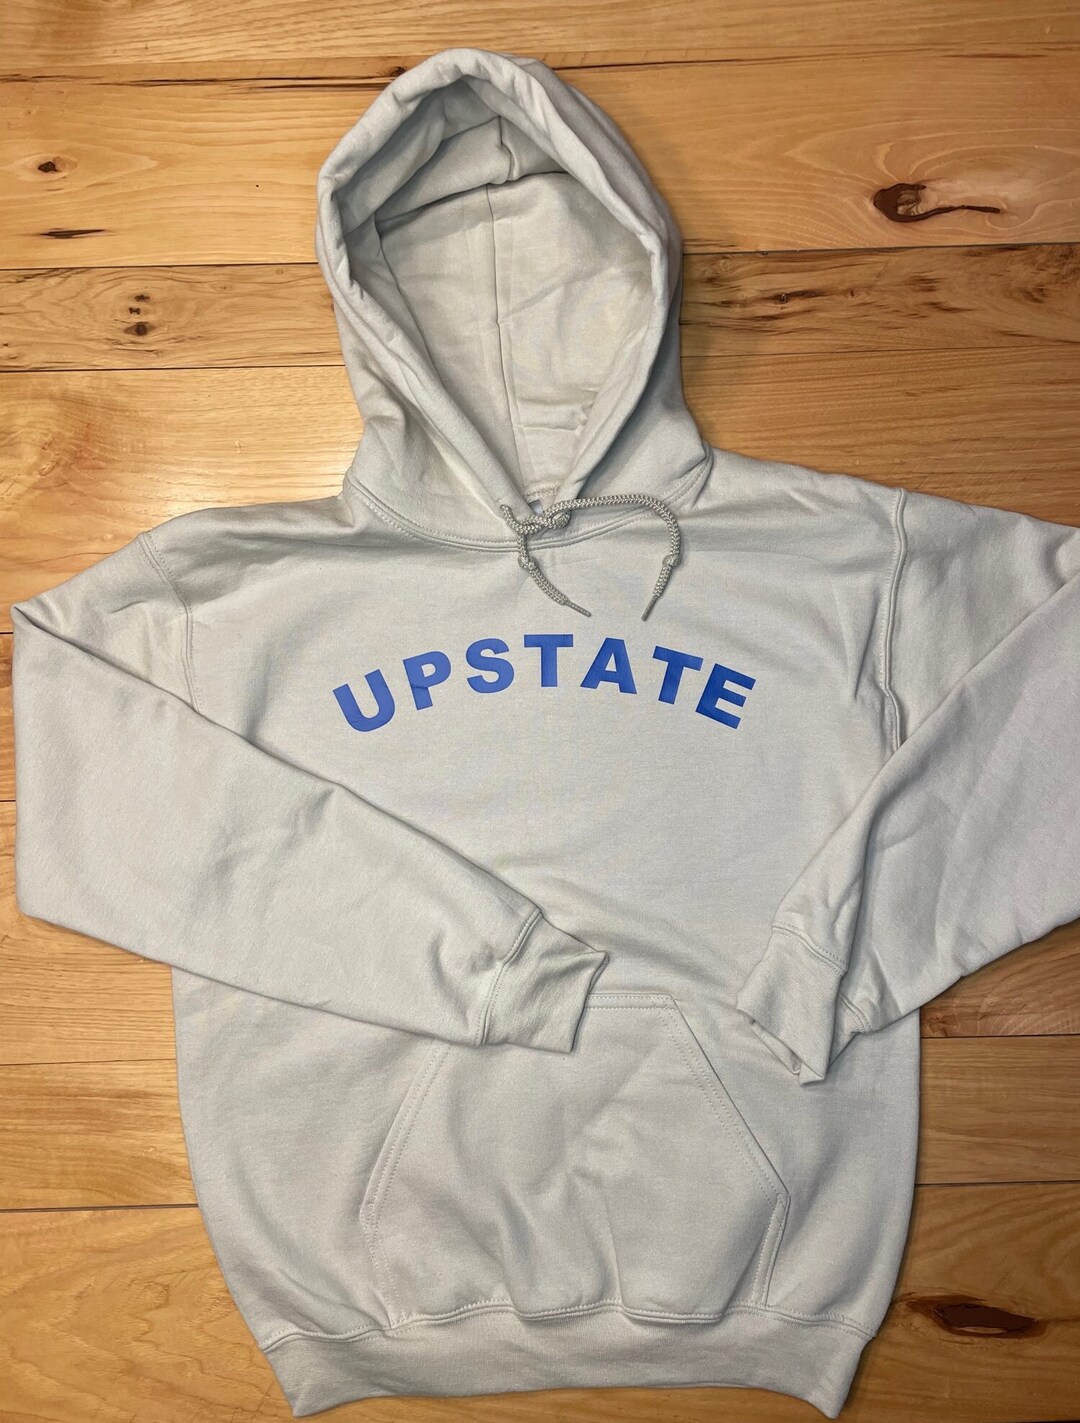 Upstate Hoodie Upstate T-shirt Upstate Sweatshirt - Etsy